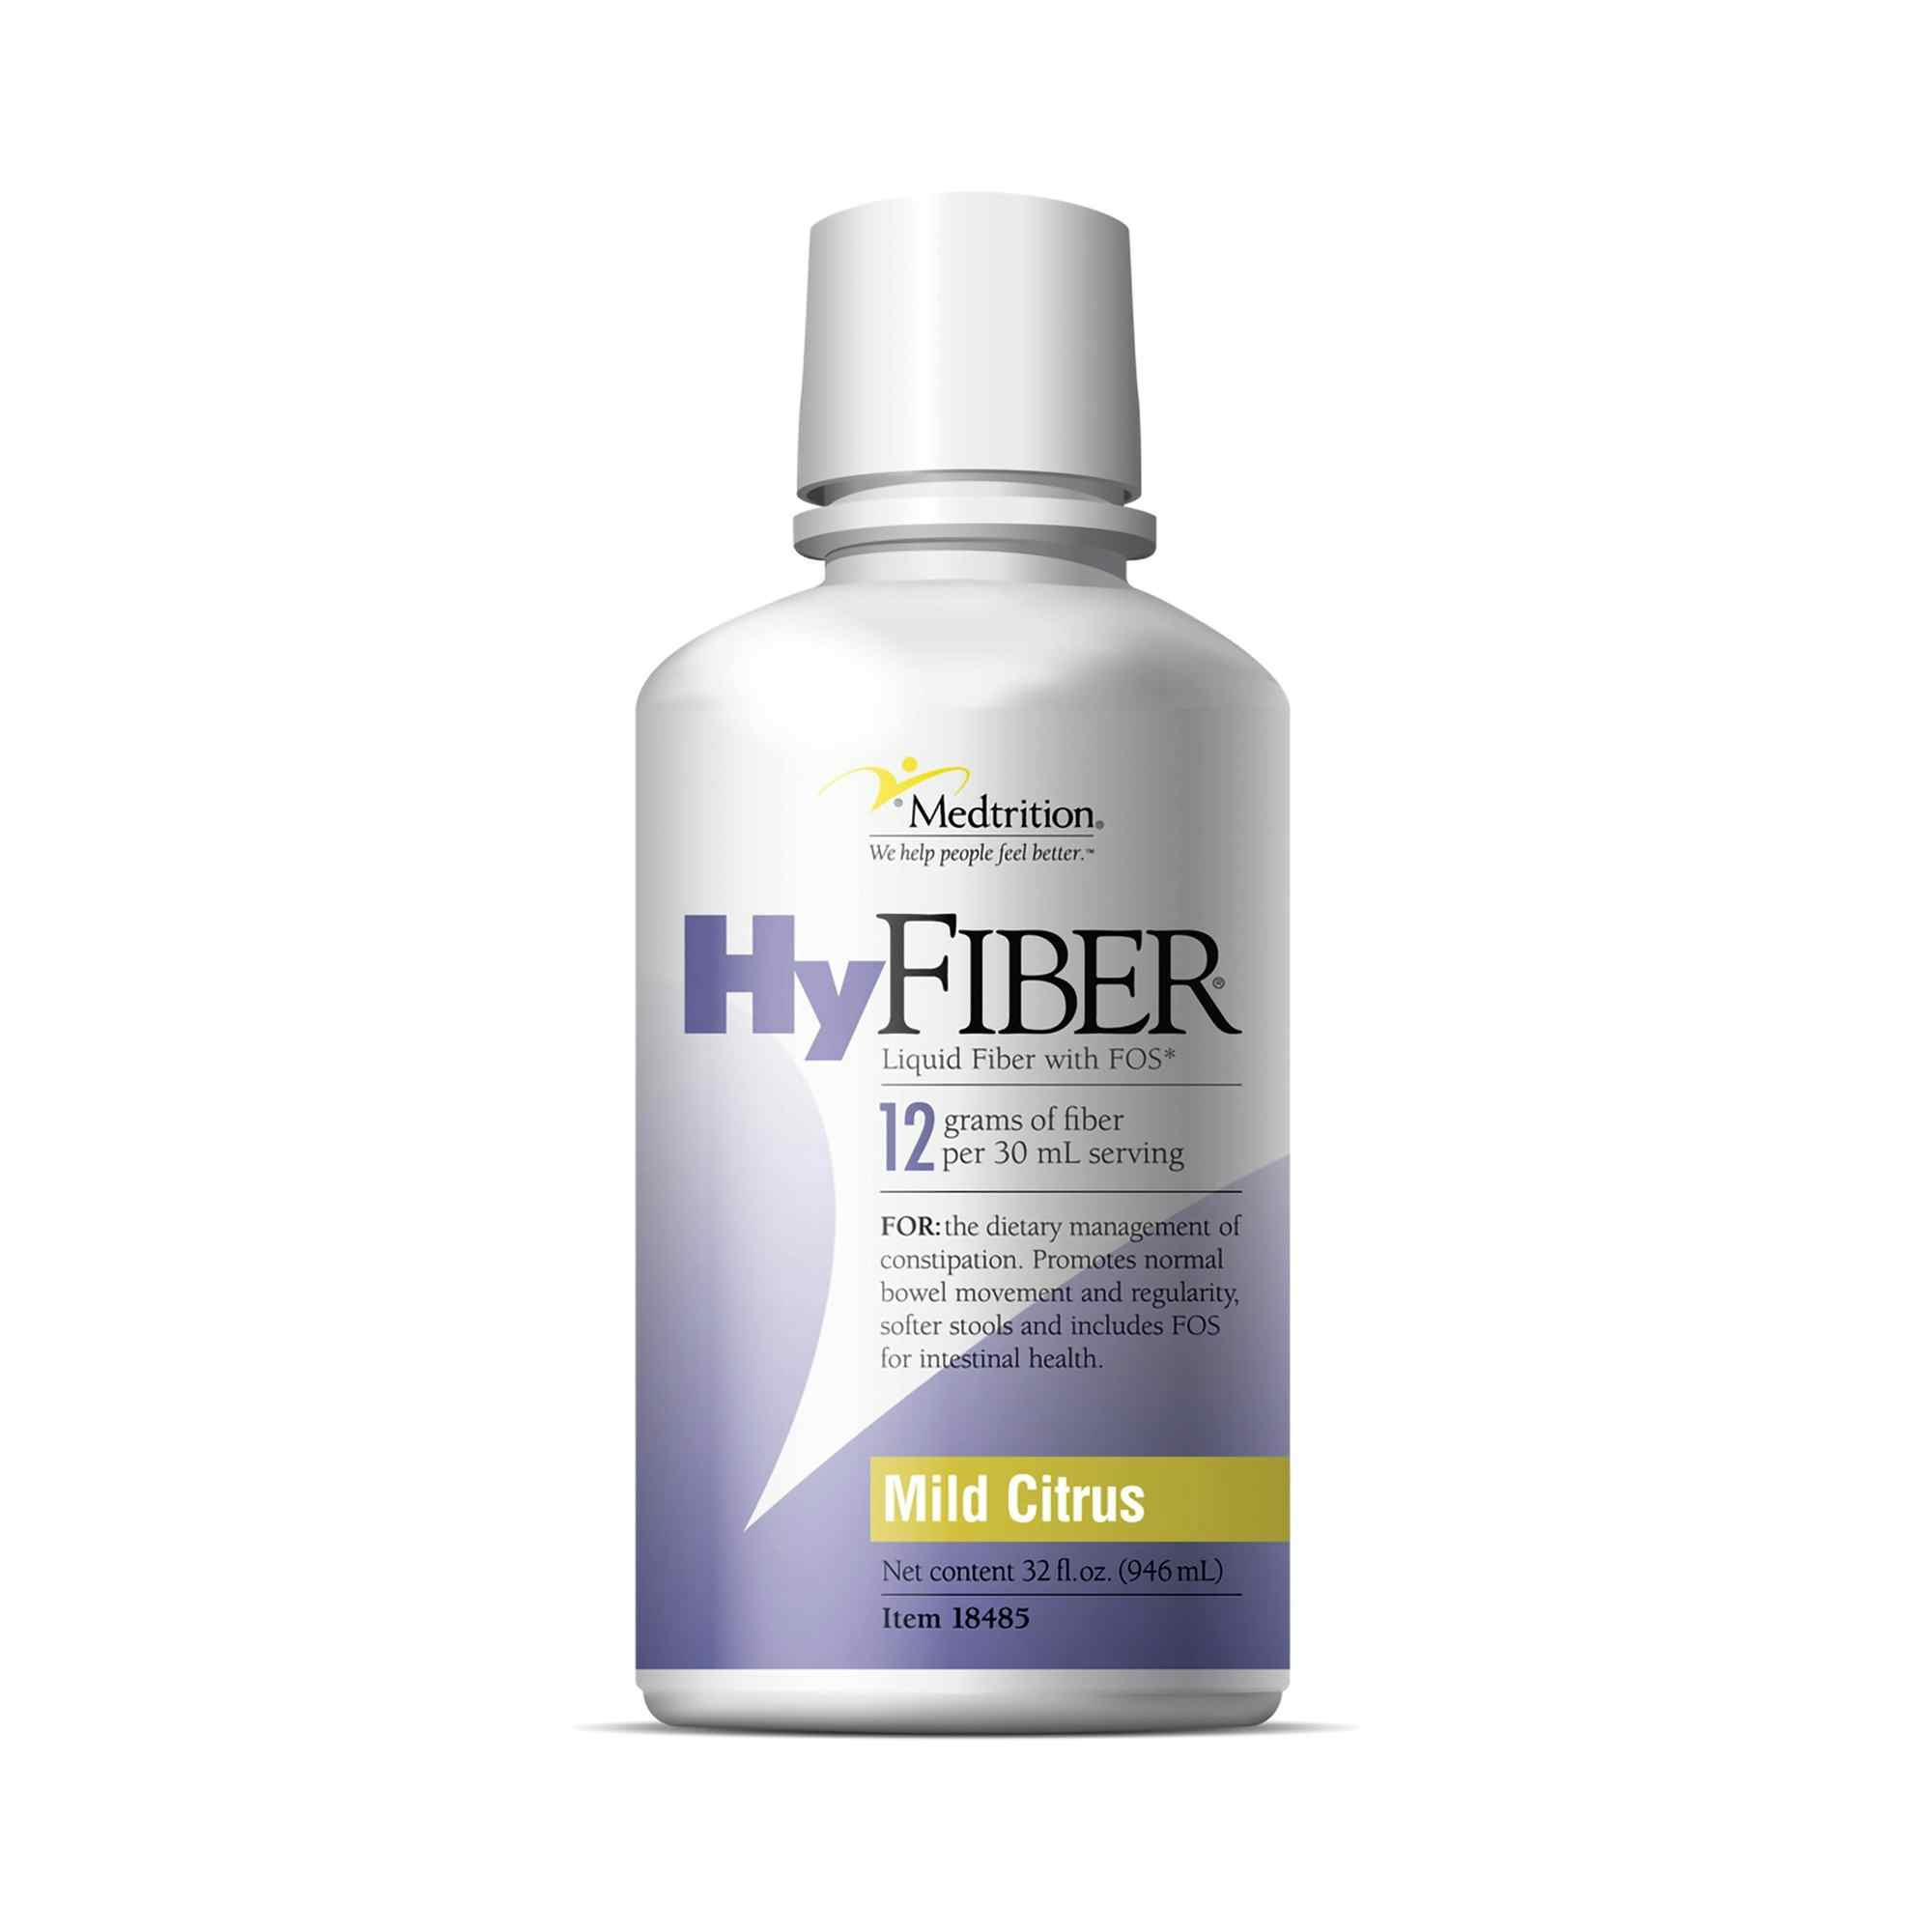 Medtrition HyFiber Liquid Fiber with FOS, Mild Citrus, 32 oz., 18485, Case of 4